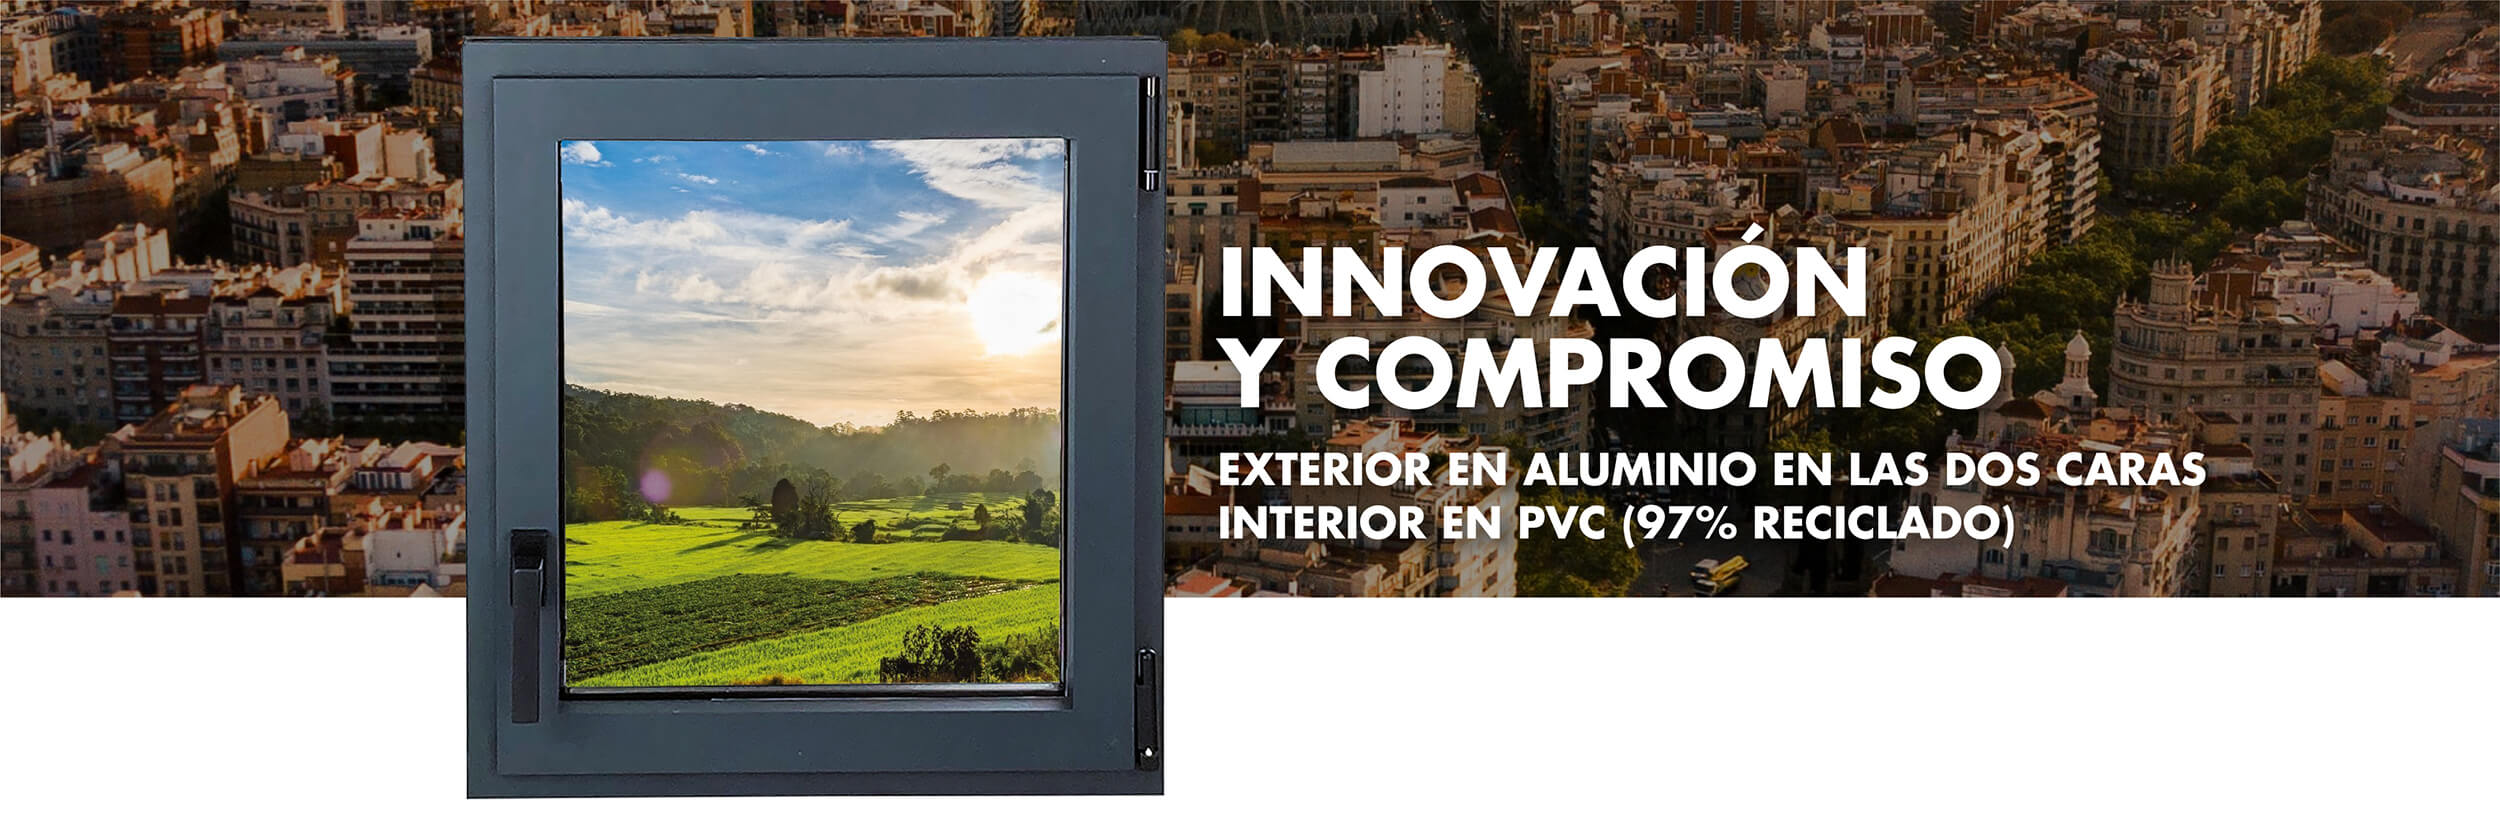 REFINE El renacimiento de la ventana | Aluminios Valverde – Ventanas de aluminio y PVC a la carta para profesionales